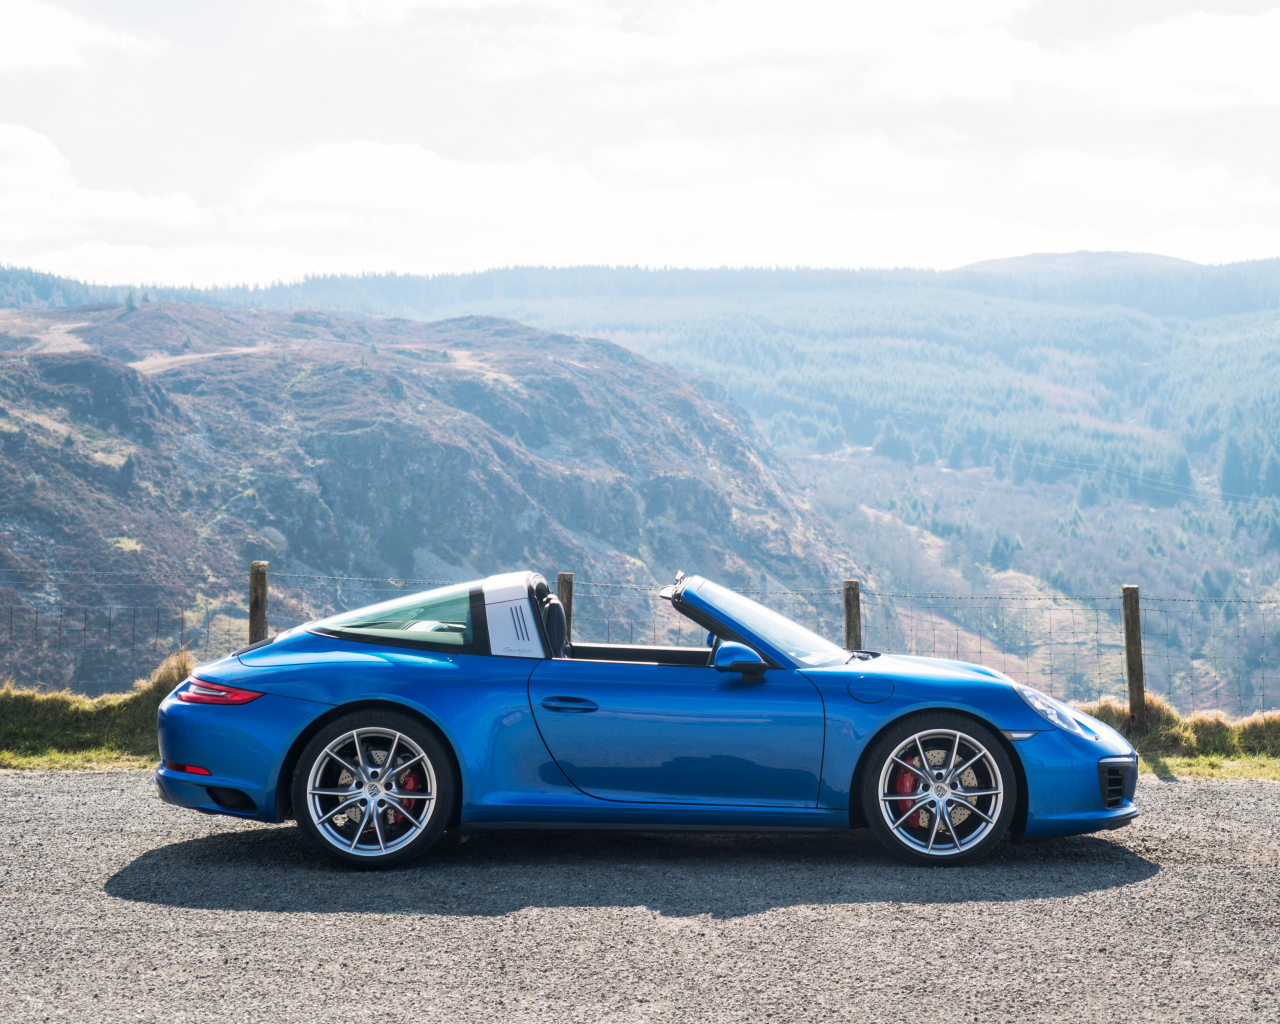 Голубой автомобиль кабриолет Porsche 911 Targa 4S на фоне гор